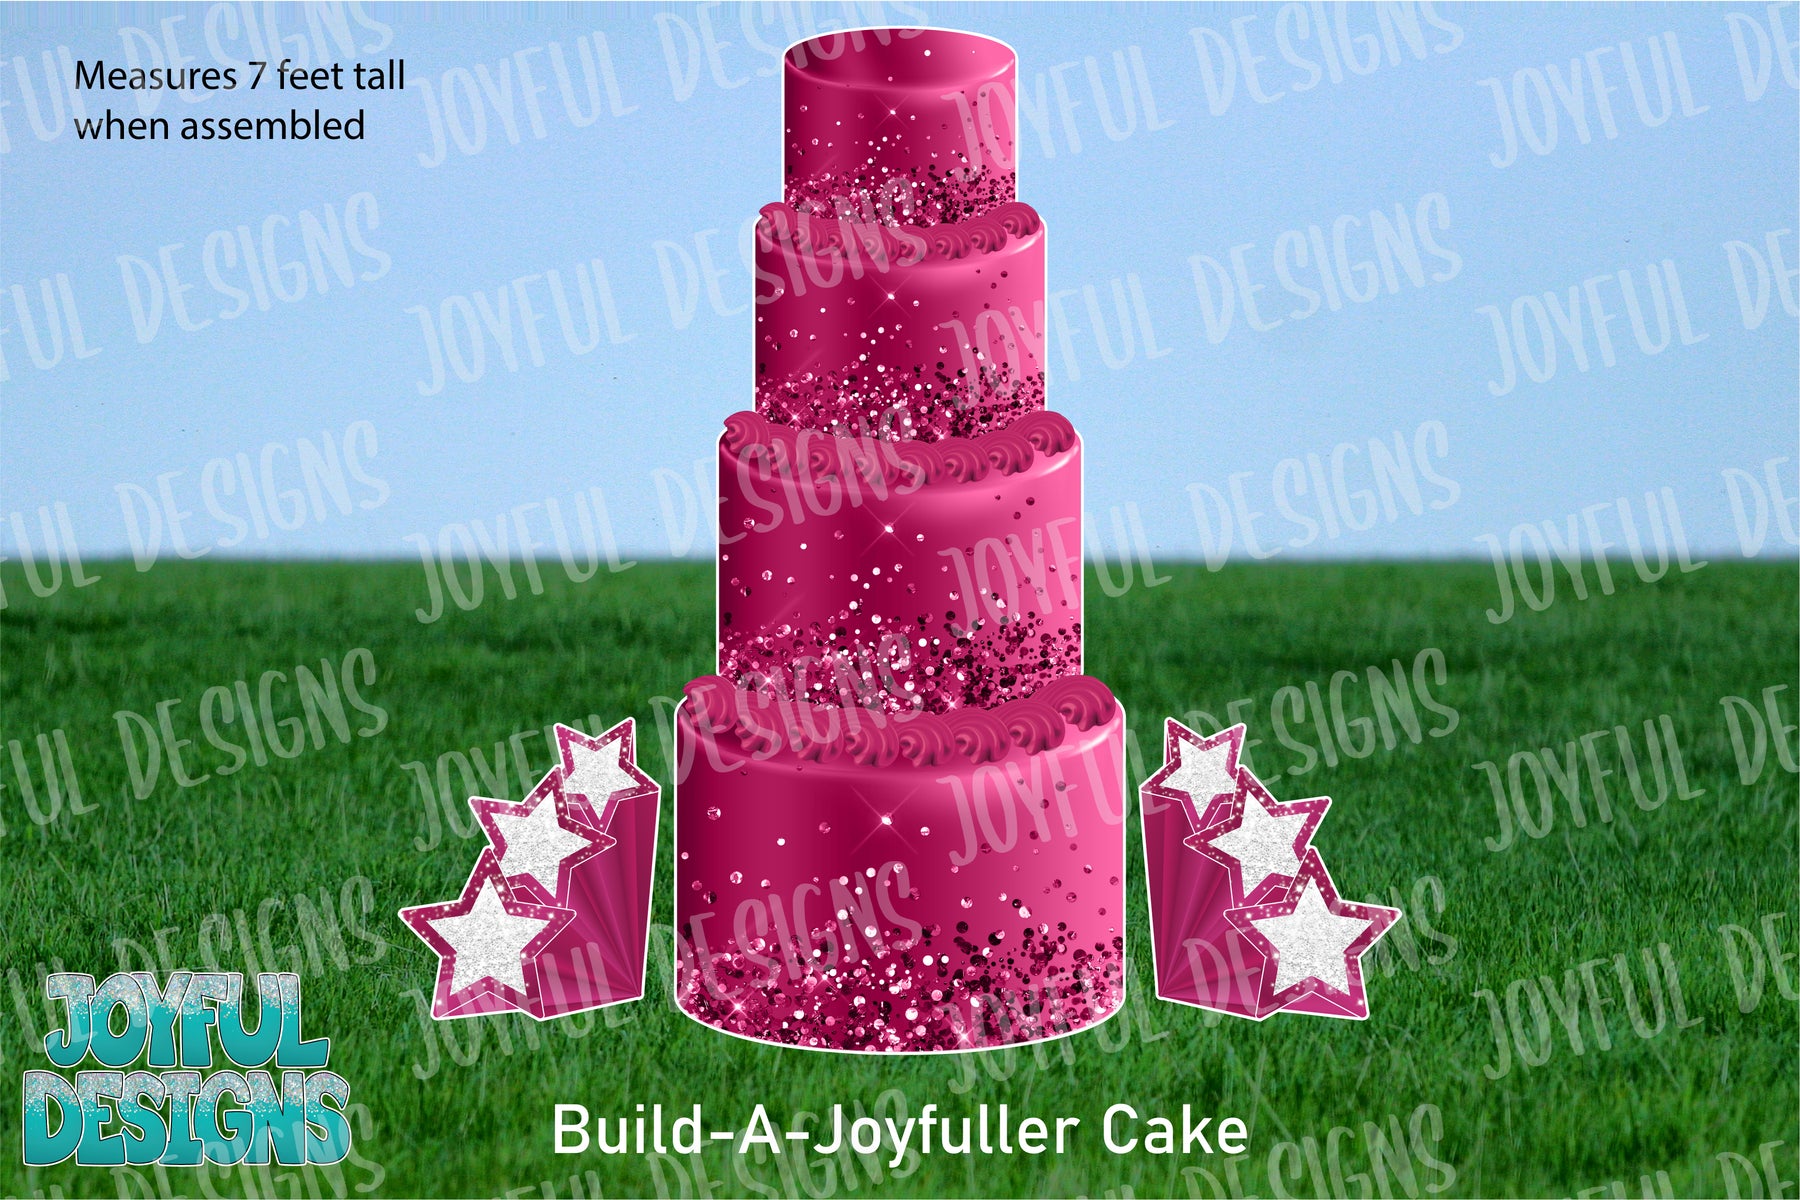 Build-A-Joyfuller Cake